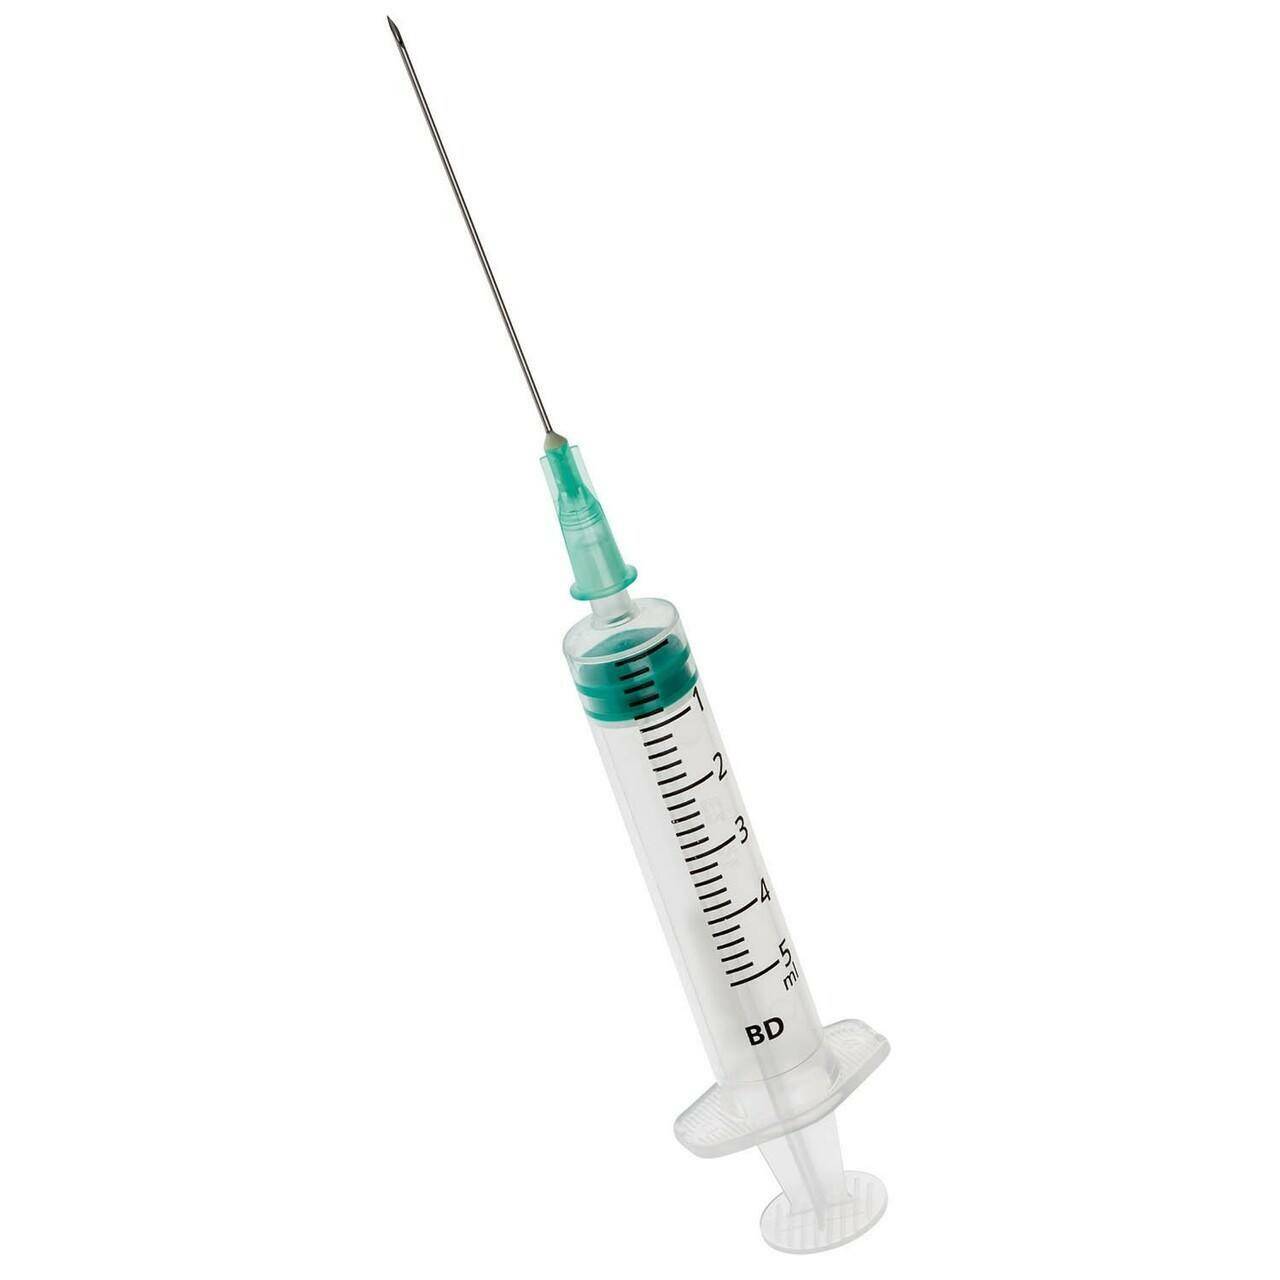 5ml + 21g 1.5" BD Emerald Luer Slip Syringe and Needle - UKMEDI